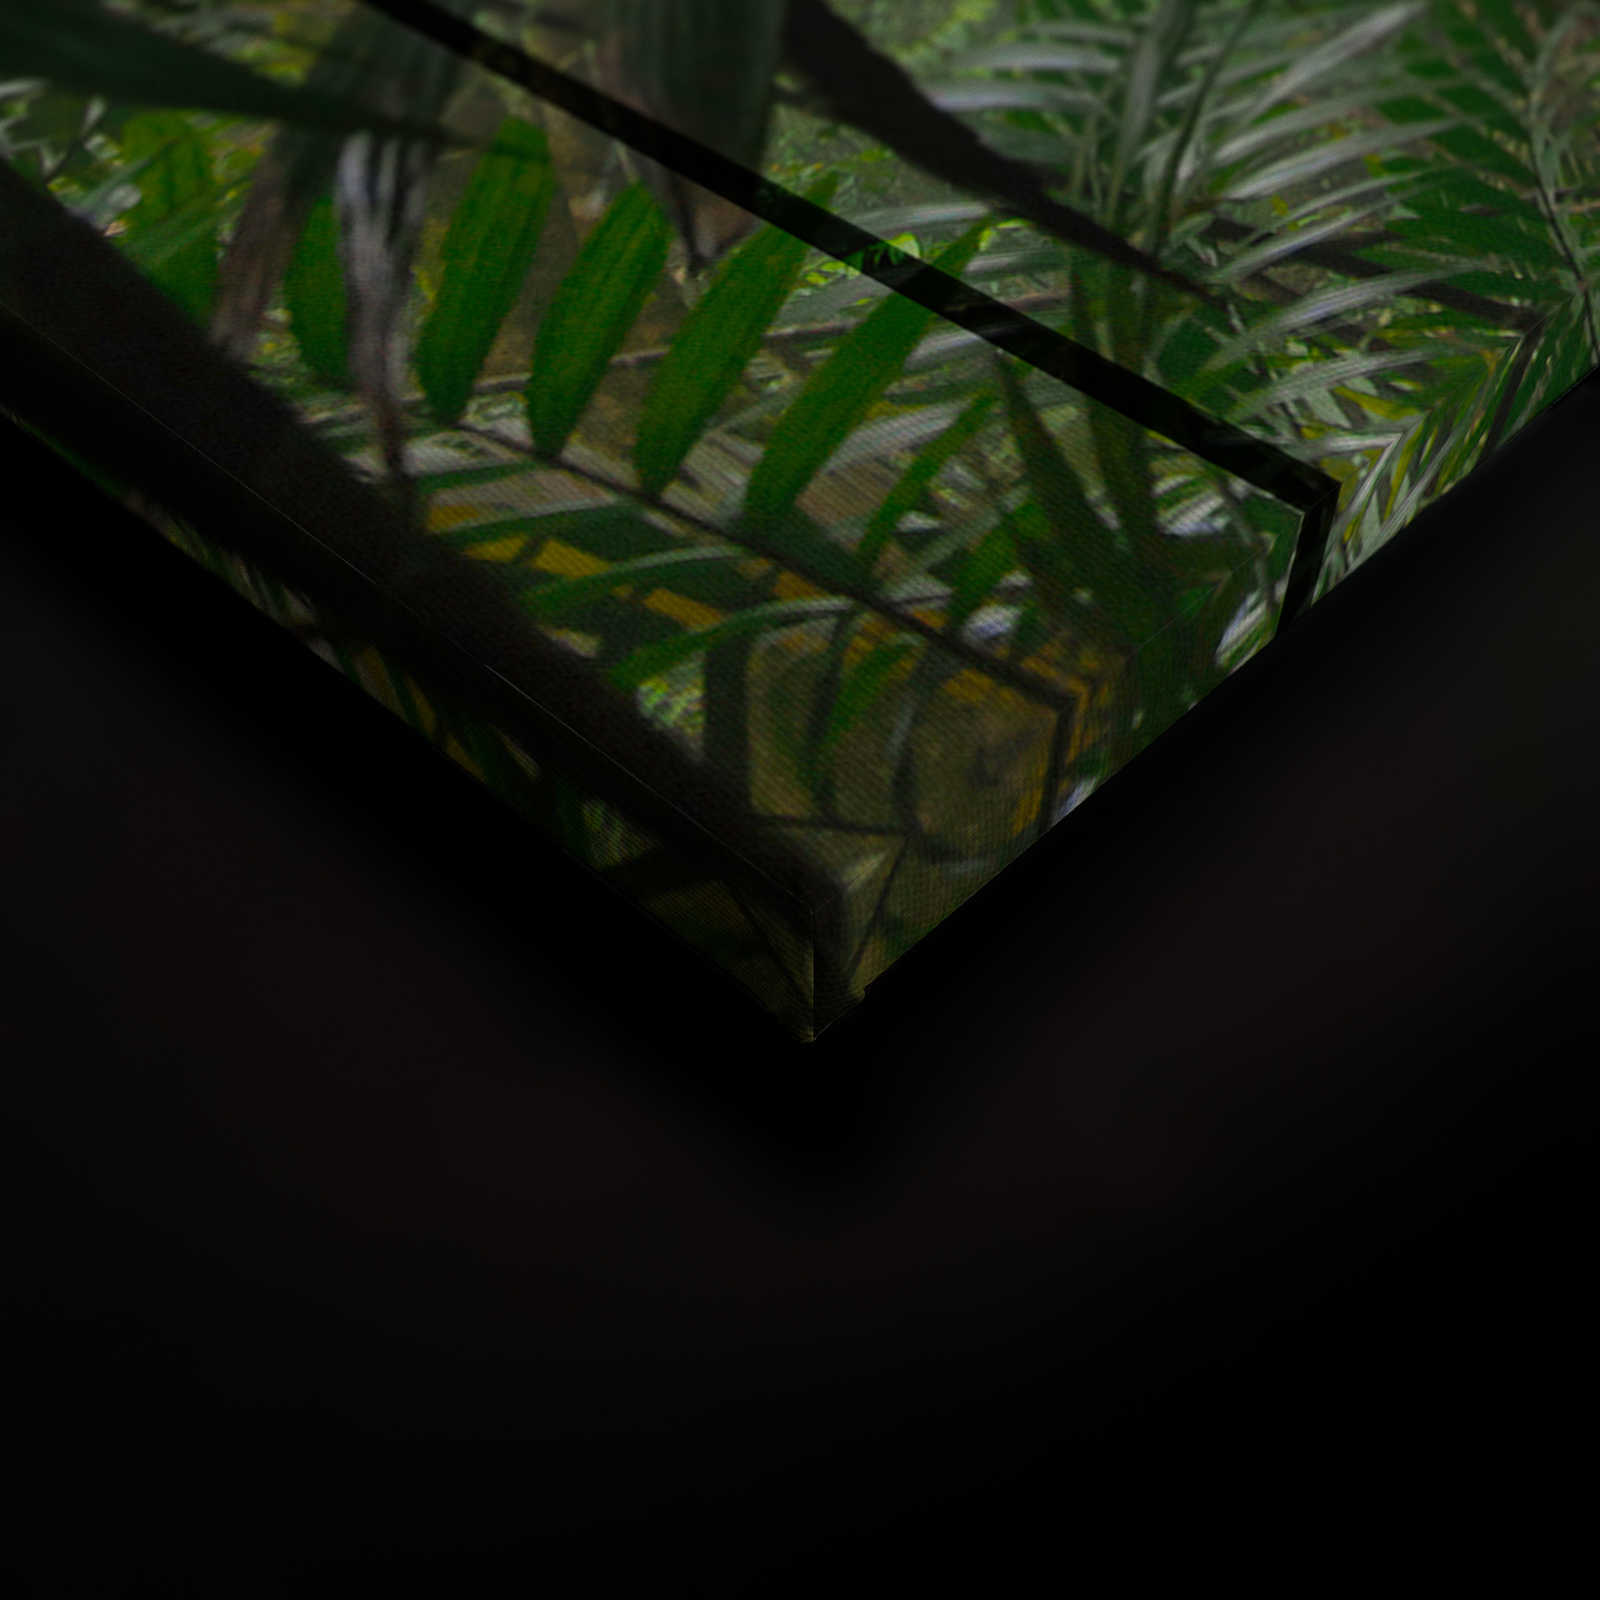             Rainforest 1 - Loft fenêtre toile avec vue sur la jungle - 0,90 m x 0,60 m
        